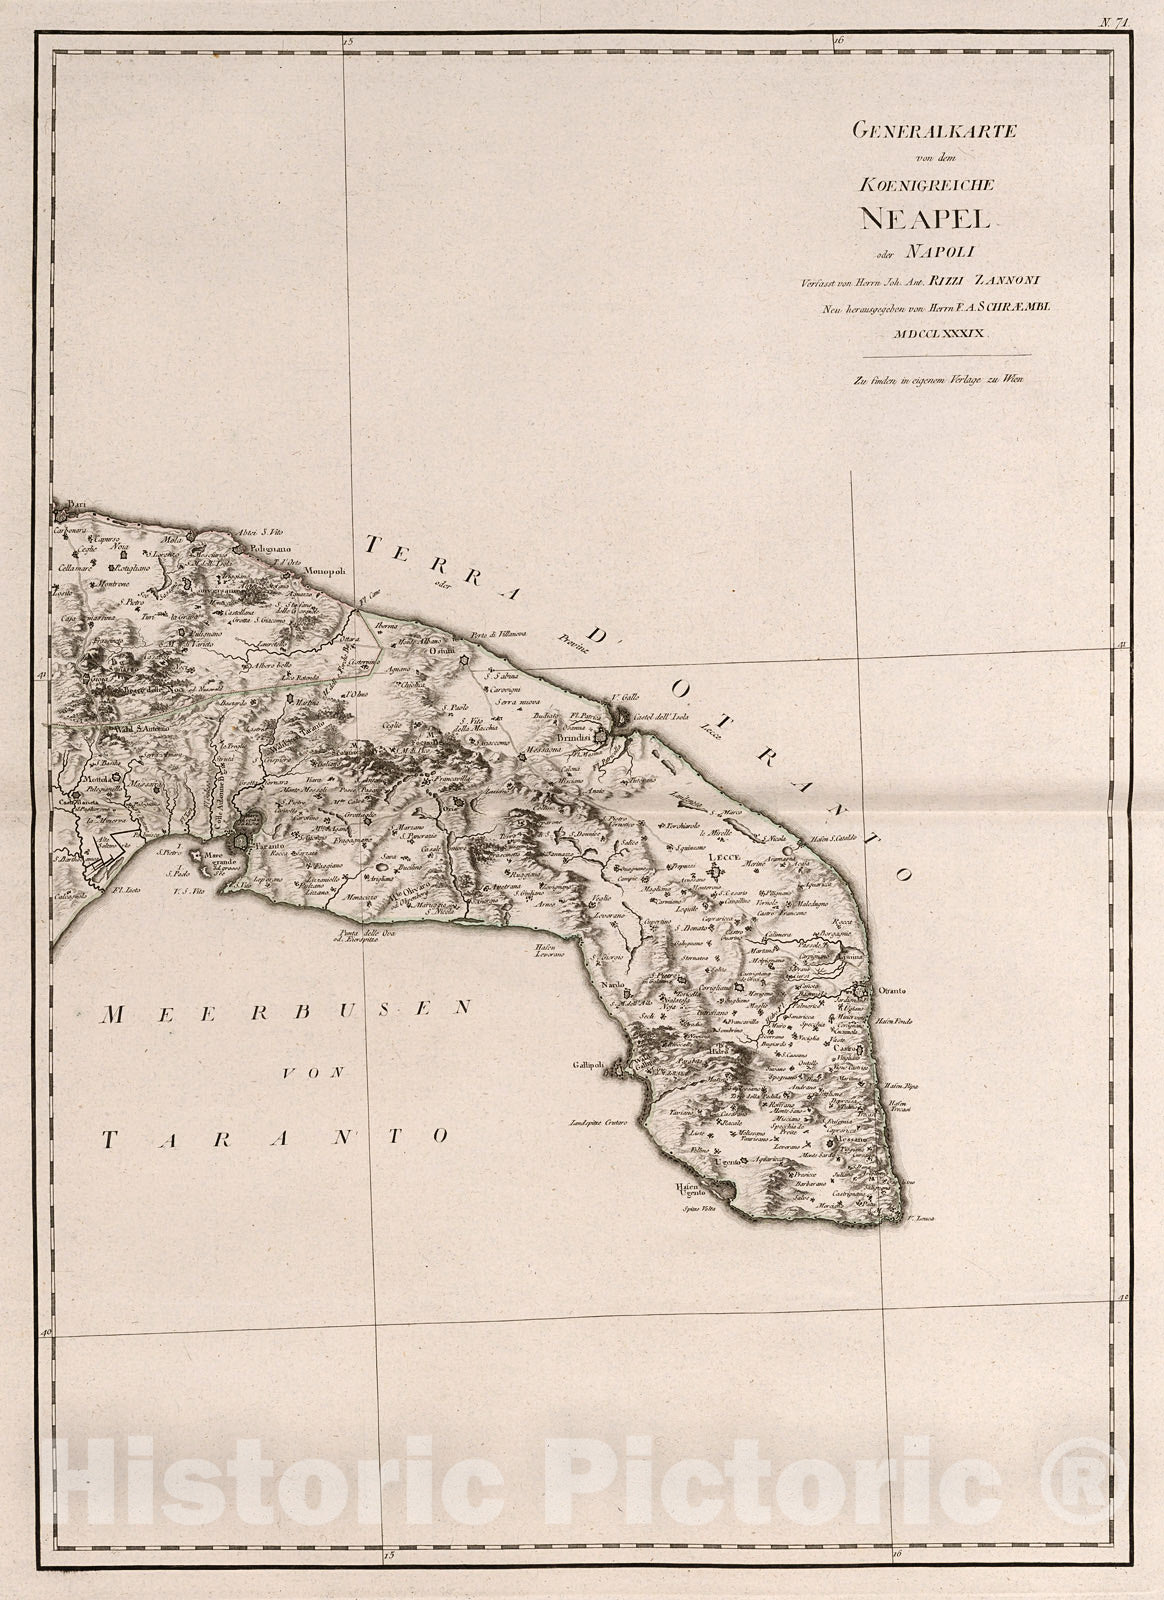 Historic Map : Generalkarte von dem Koenigreiche Neapel oder Napoli (eastern sheet)., 1800, Vintage Wall Decor